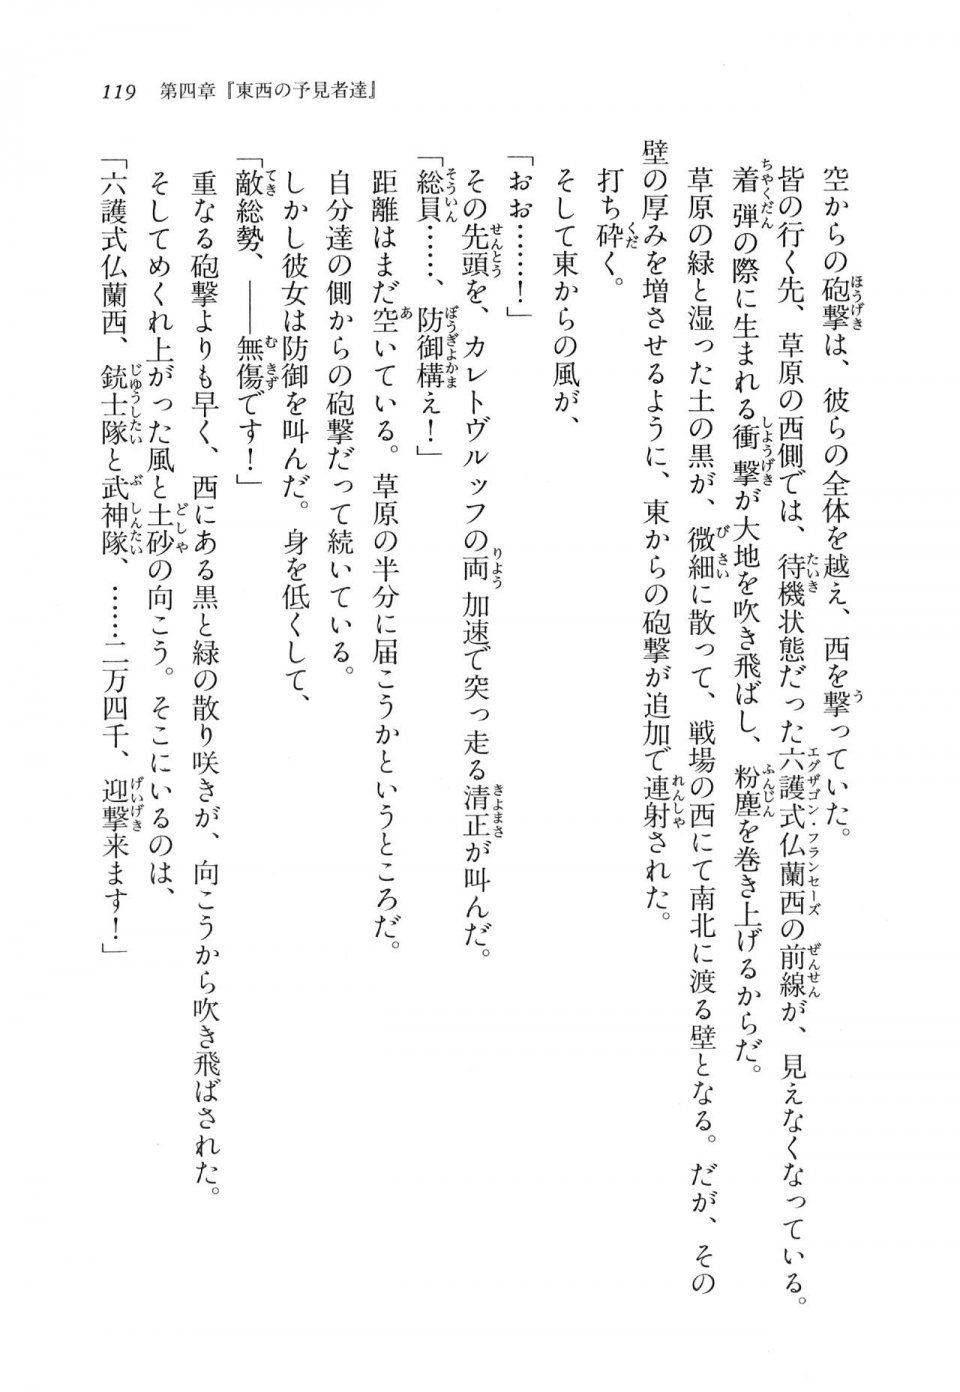 Kyoukai Senjou no Horizon LN Vol 11(5A) - Photo #119